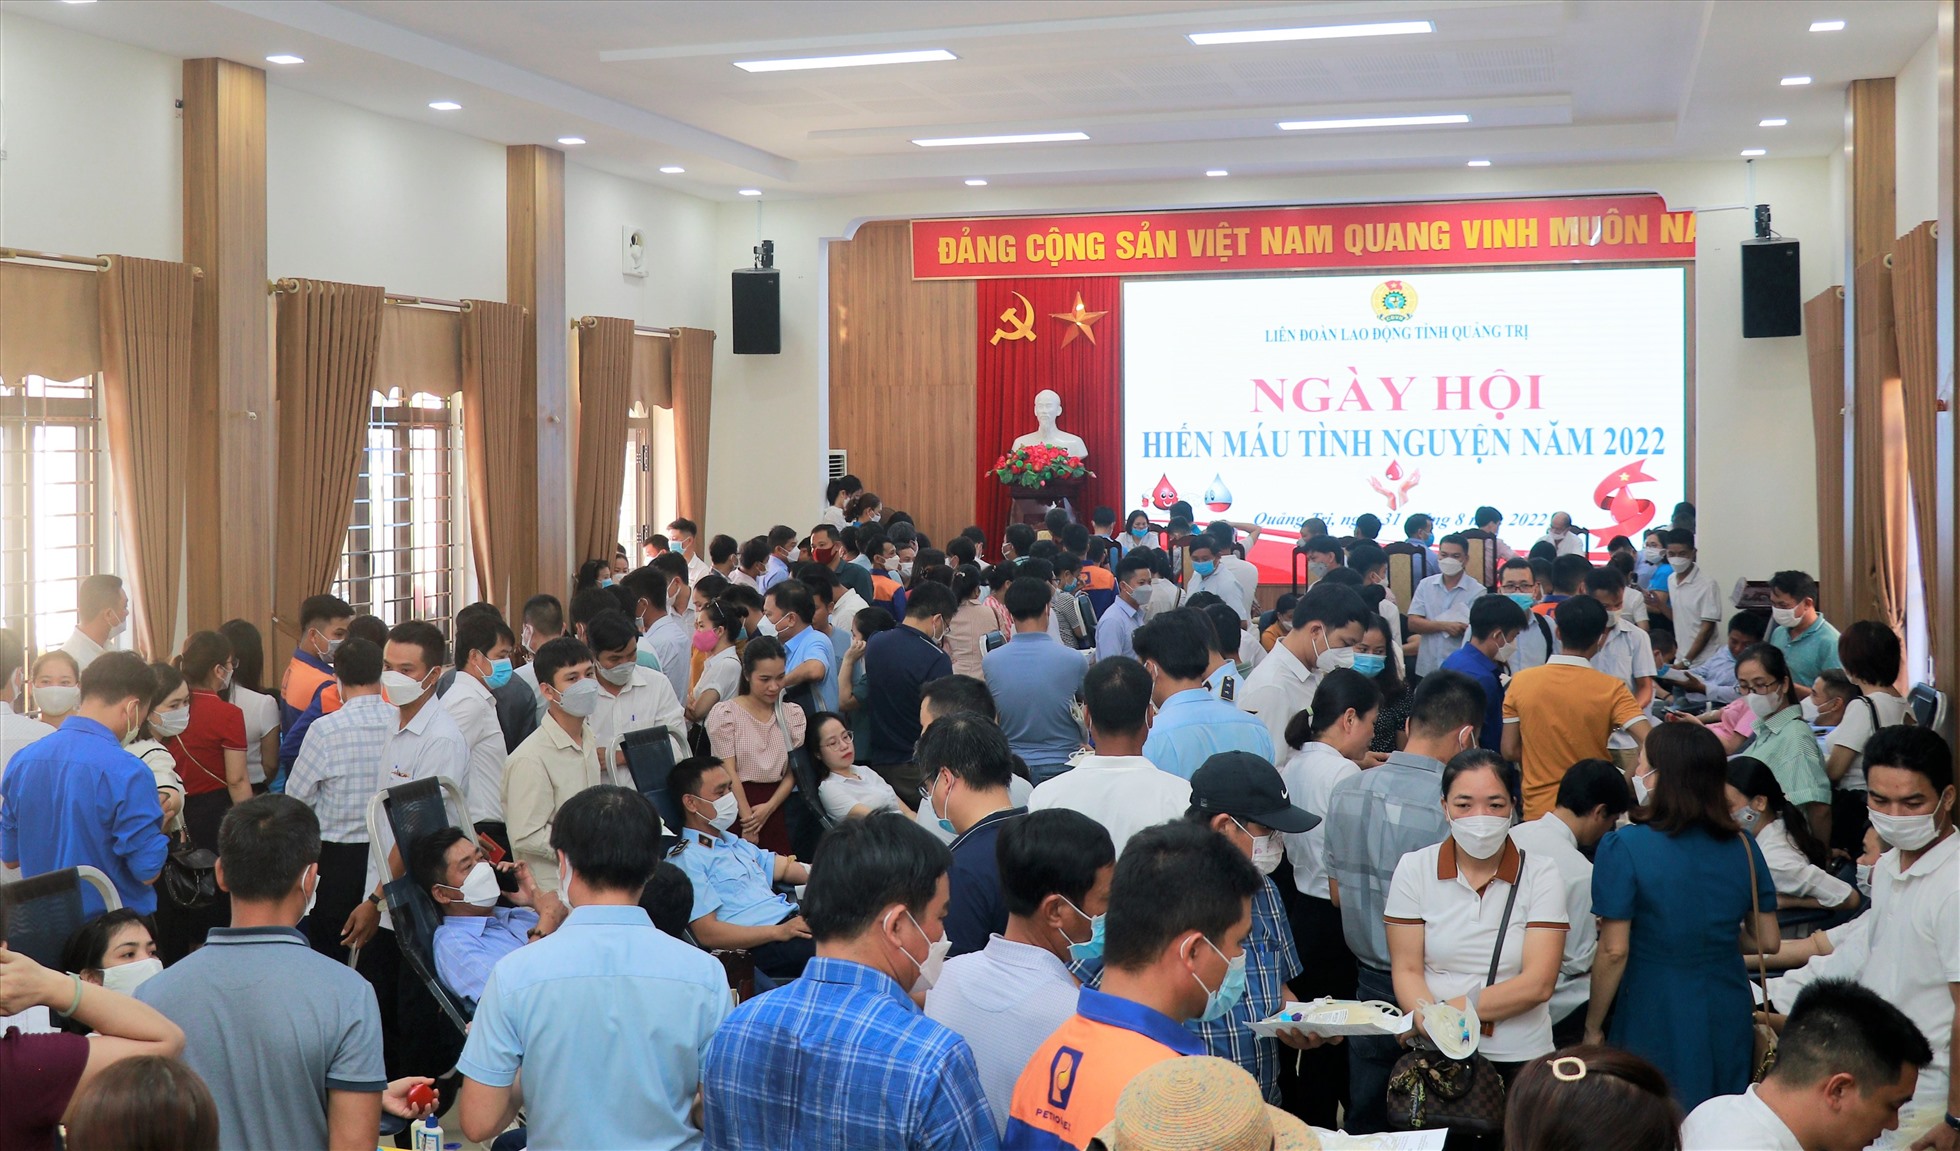 Đoàn viên công đoàn, người lao động ở tỉnh Quảng Trị tham gia hiến máu tình nguyện. Ảnh: TD.